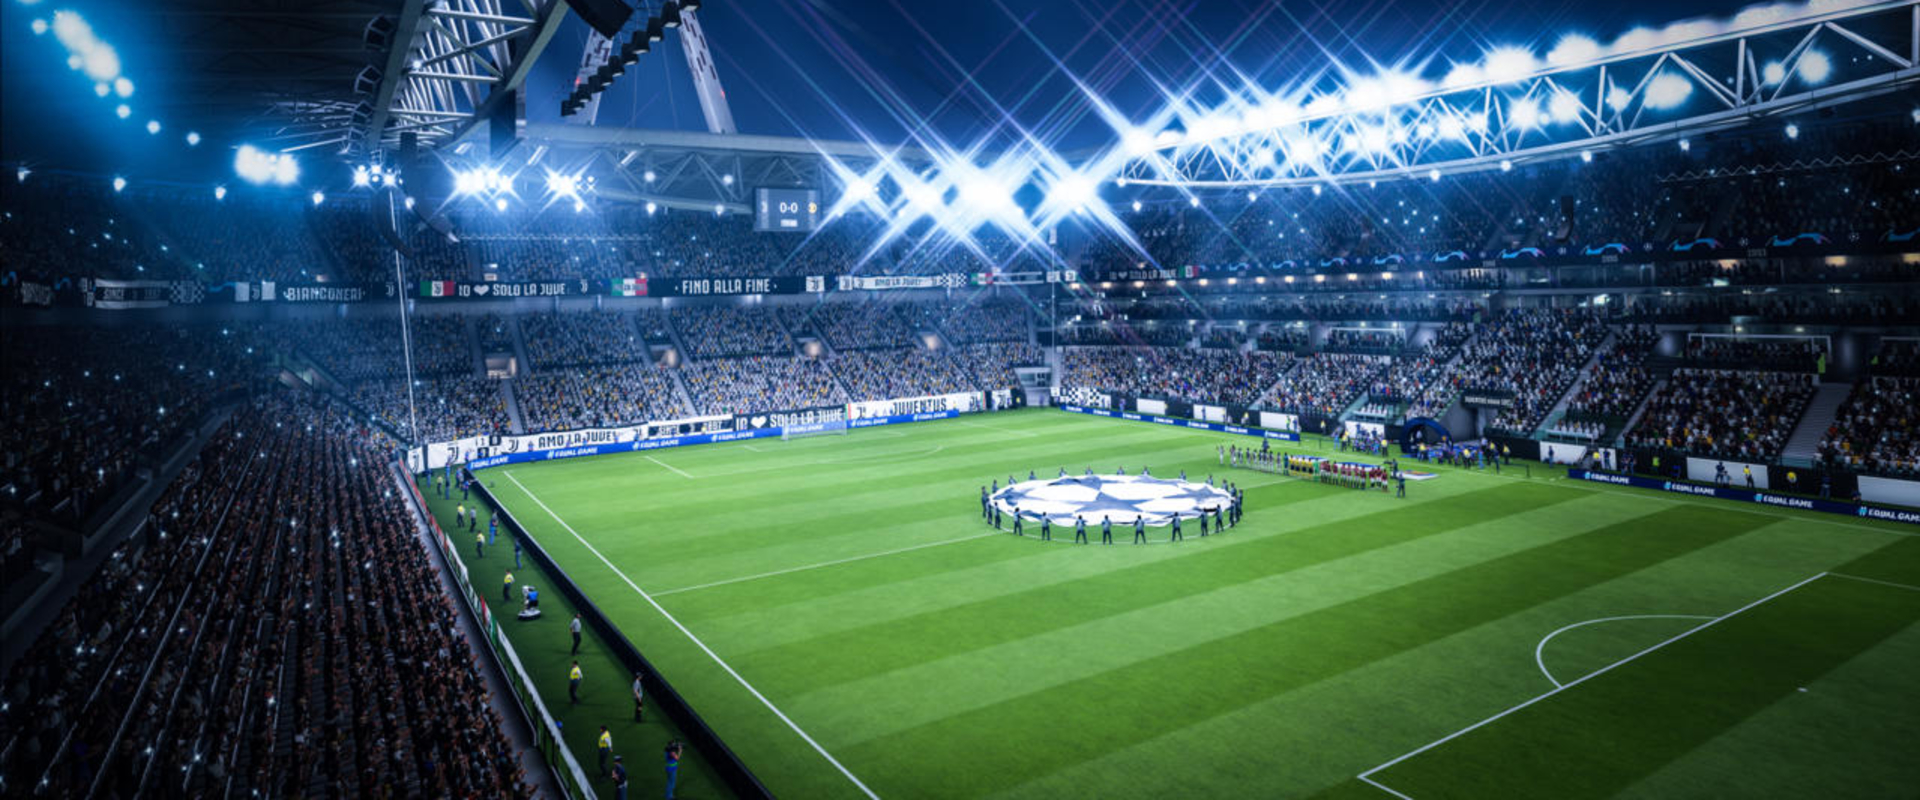 Részletesebb taktika és beállítások, újabb kiszivárgott FIFA19 infok